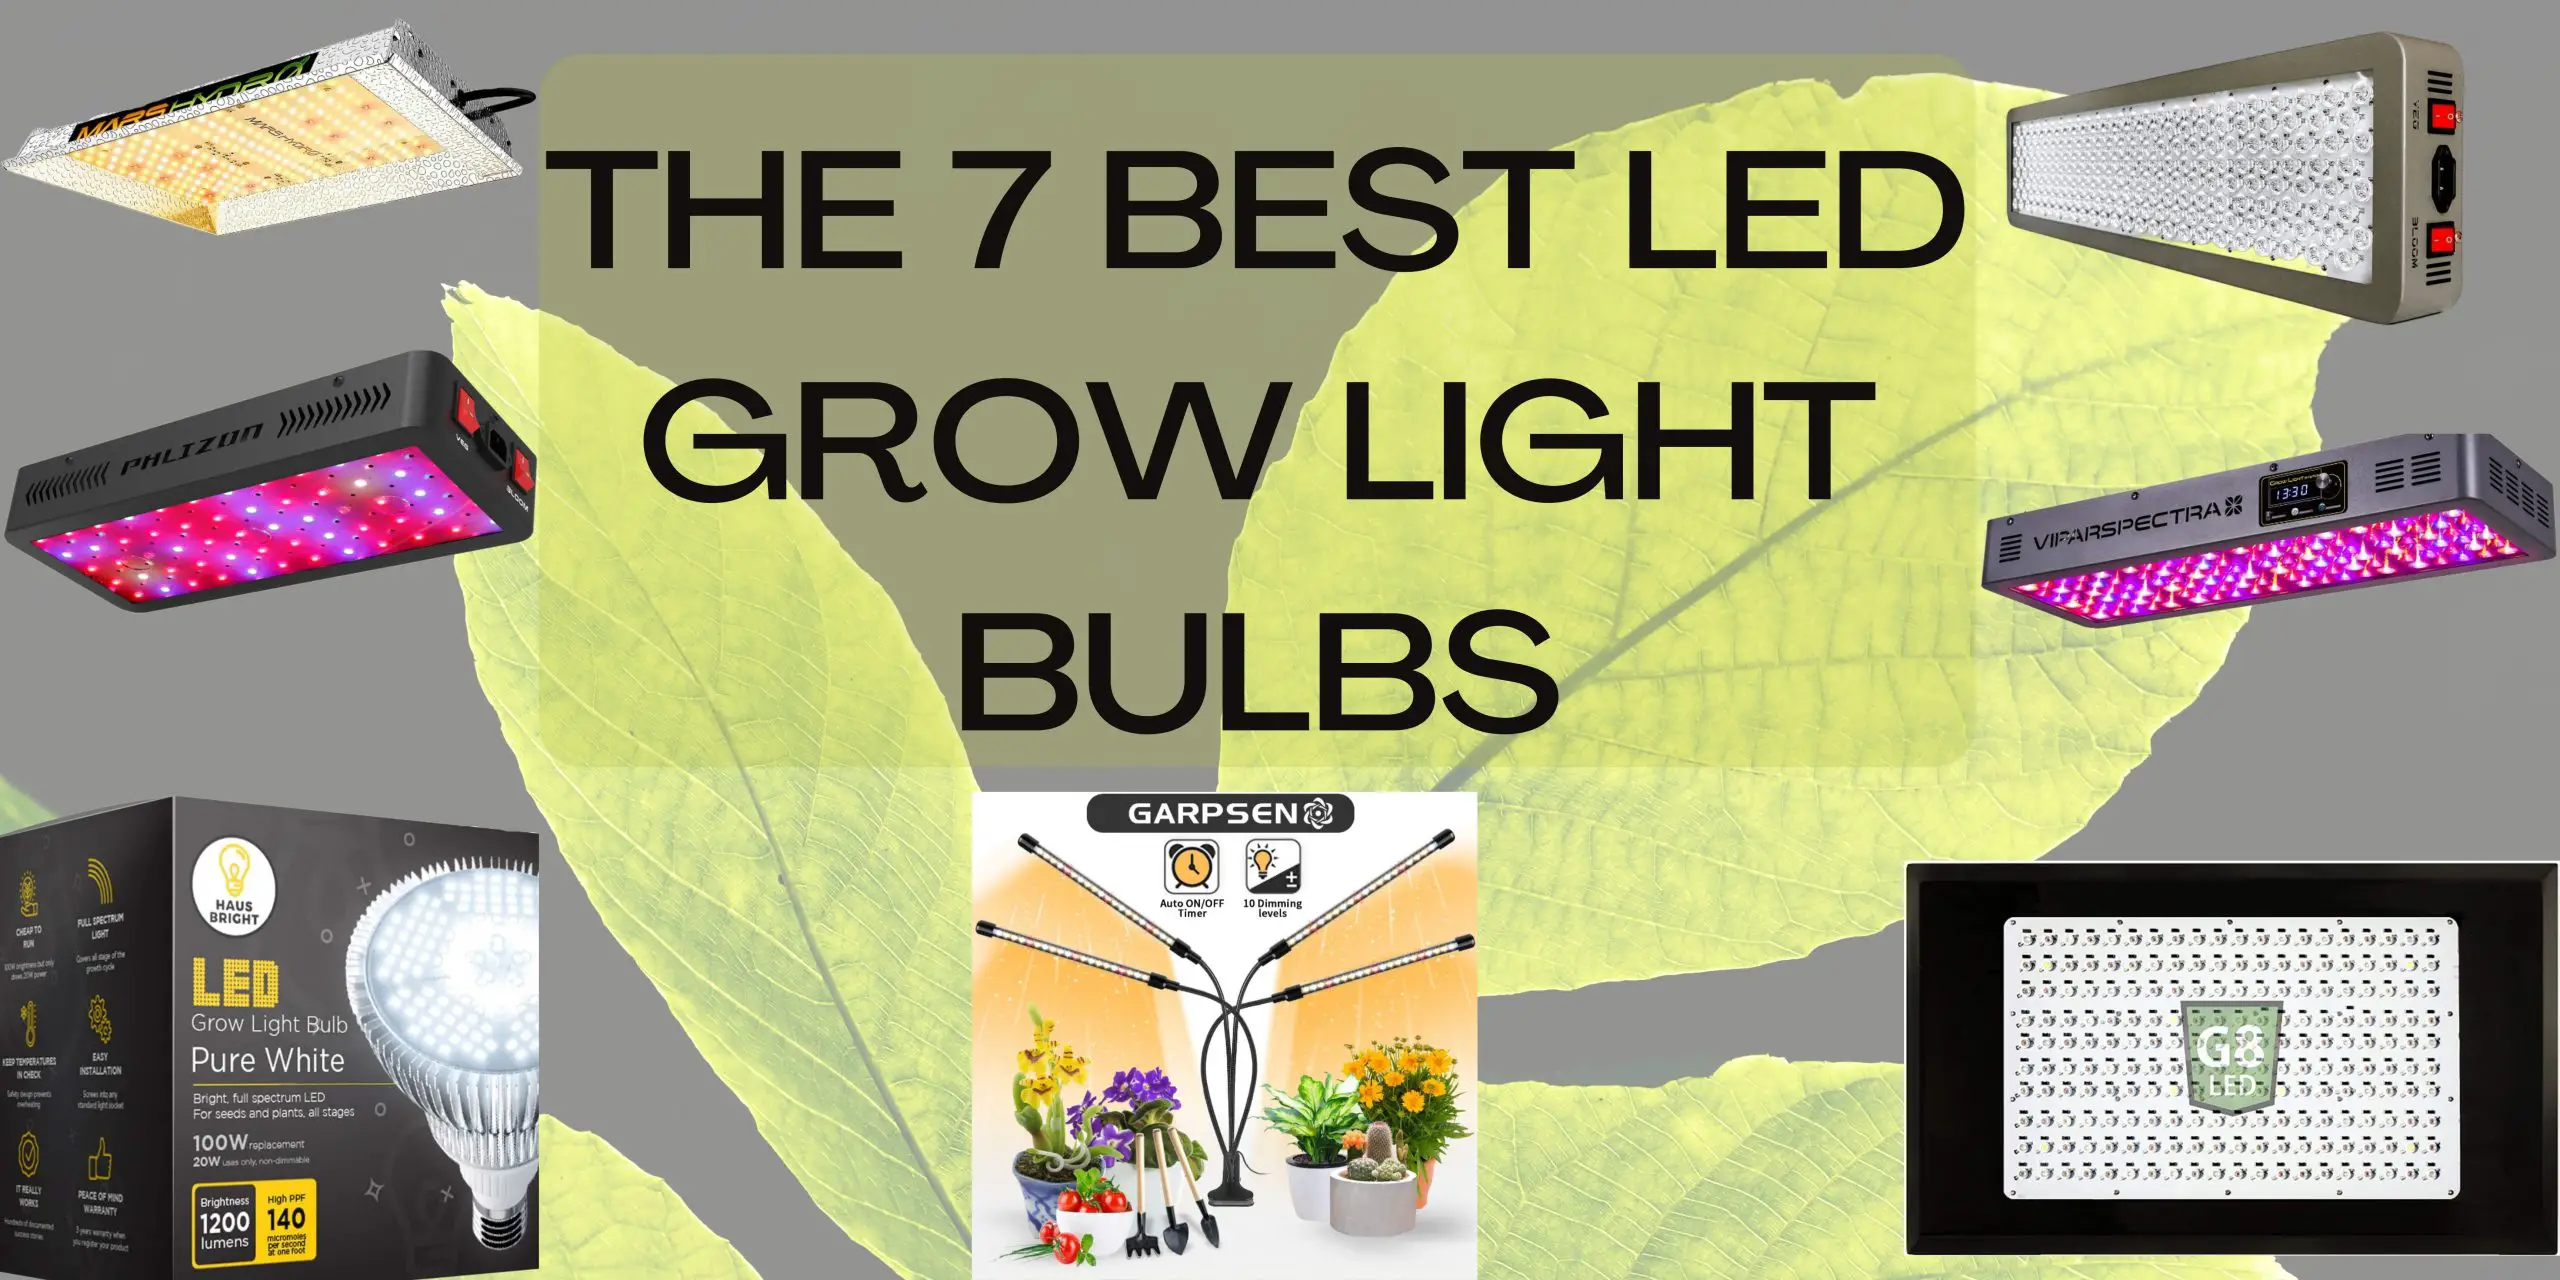 BEST LED GROW LIGHT BULBS